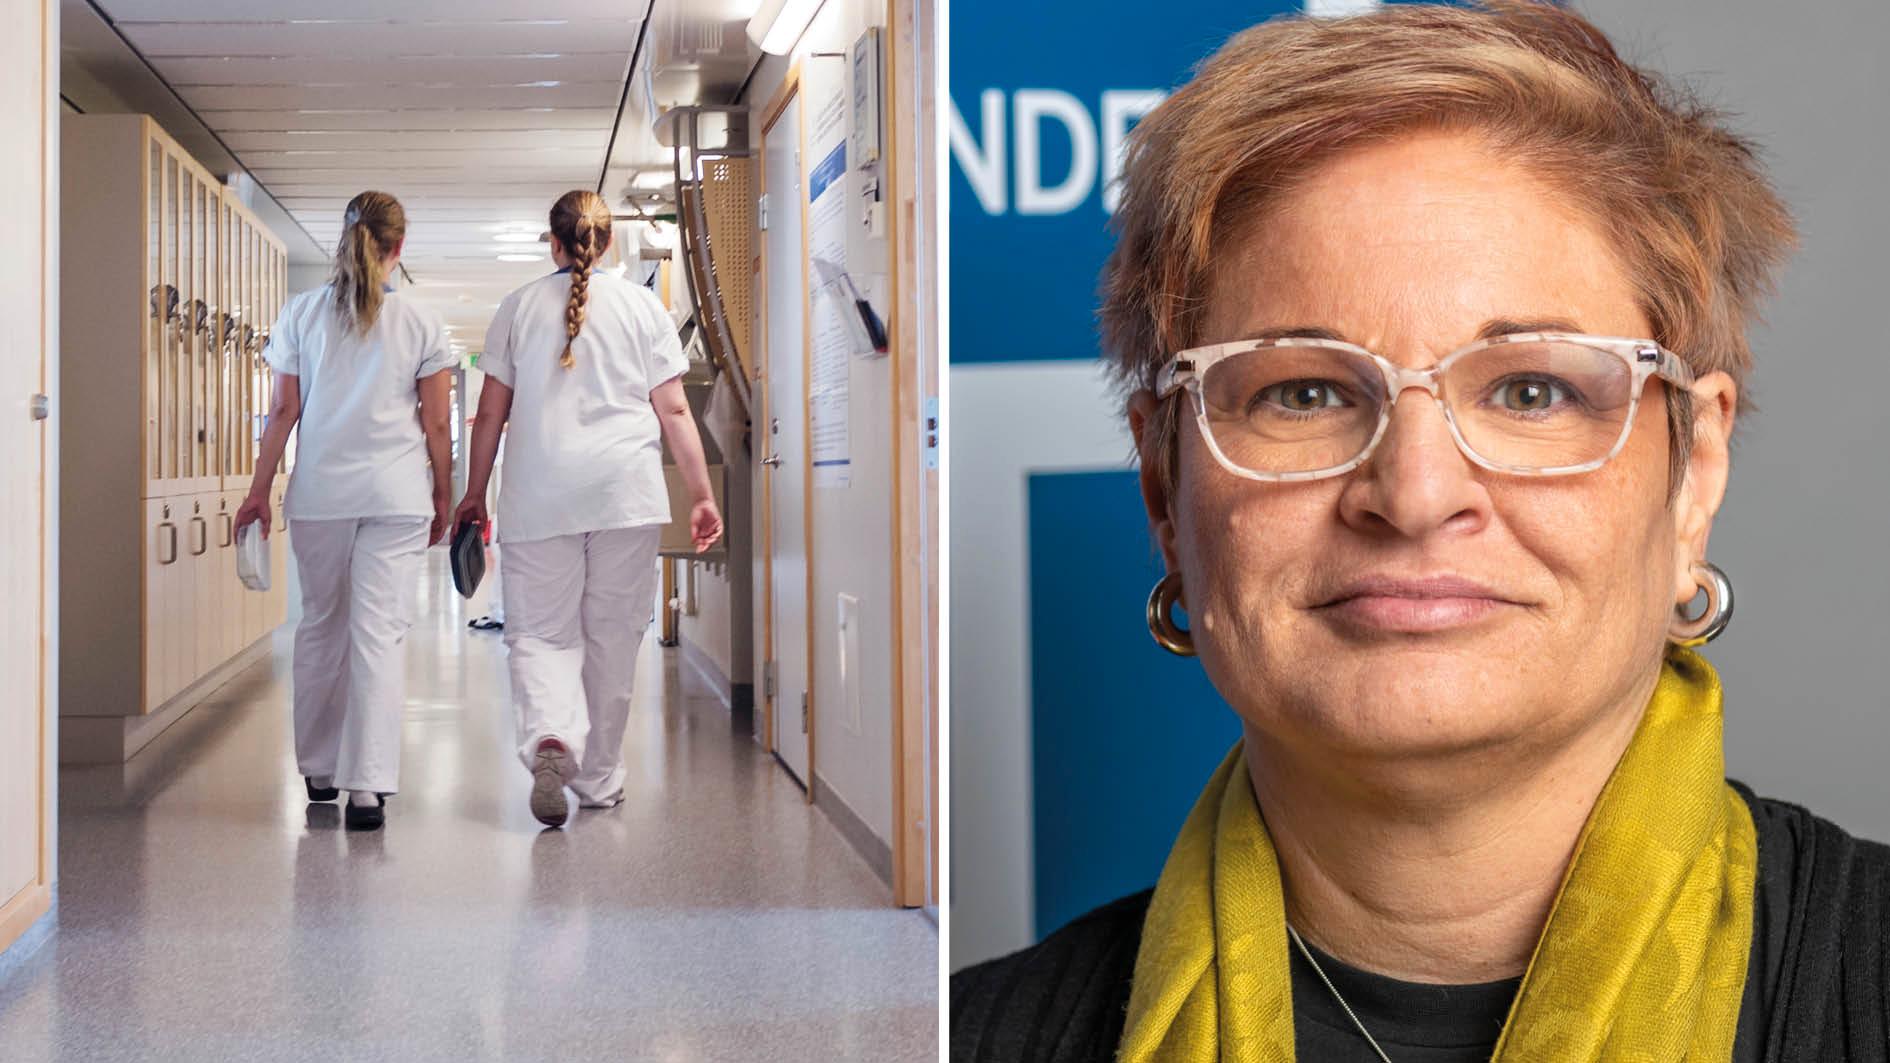 Många sjuksköterskor jobbar deltid för att orka – och det står dem dyrt. En sjuksköterska kan gå miste om så mycket som sju miljoner kronor under ett yrkesliv enligt Vårdförbundets beräkningar, skriver Sineva Ribeiro.